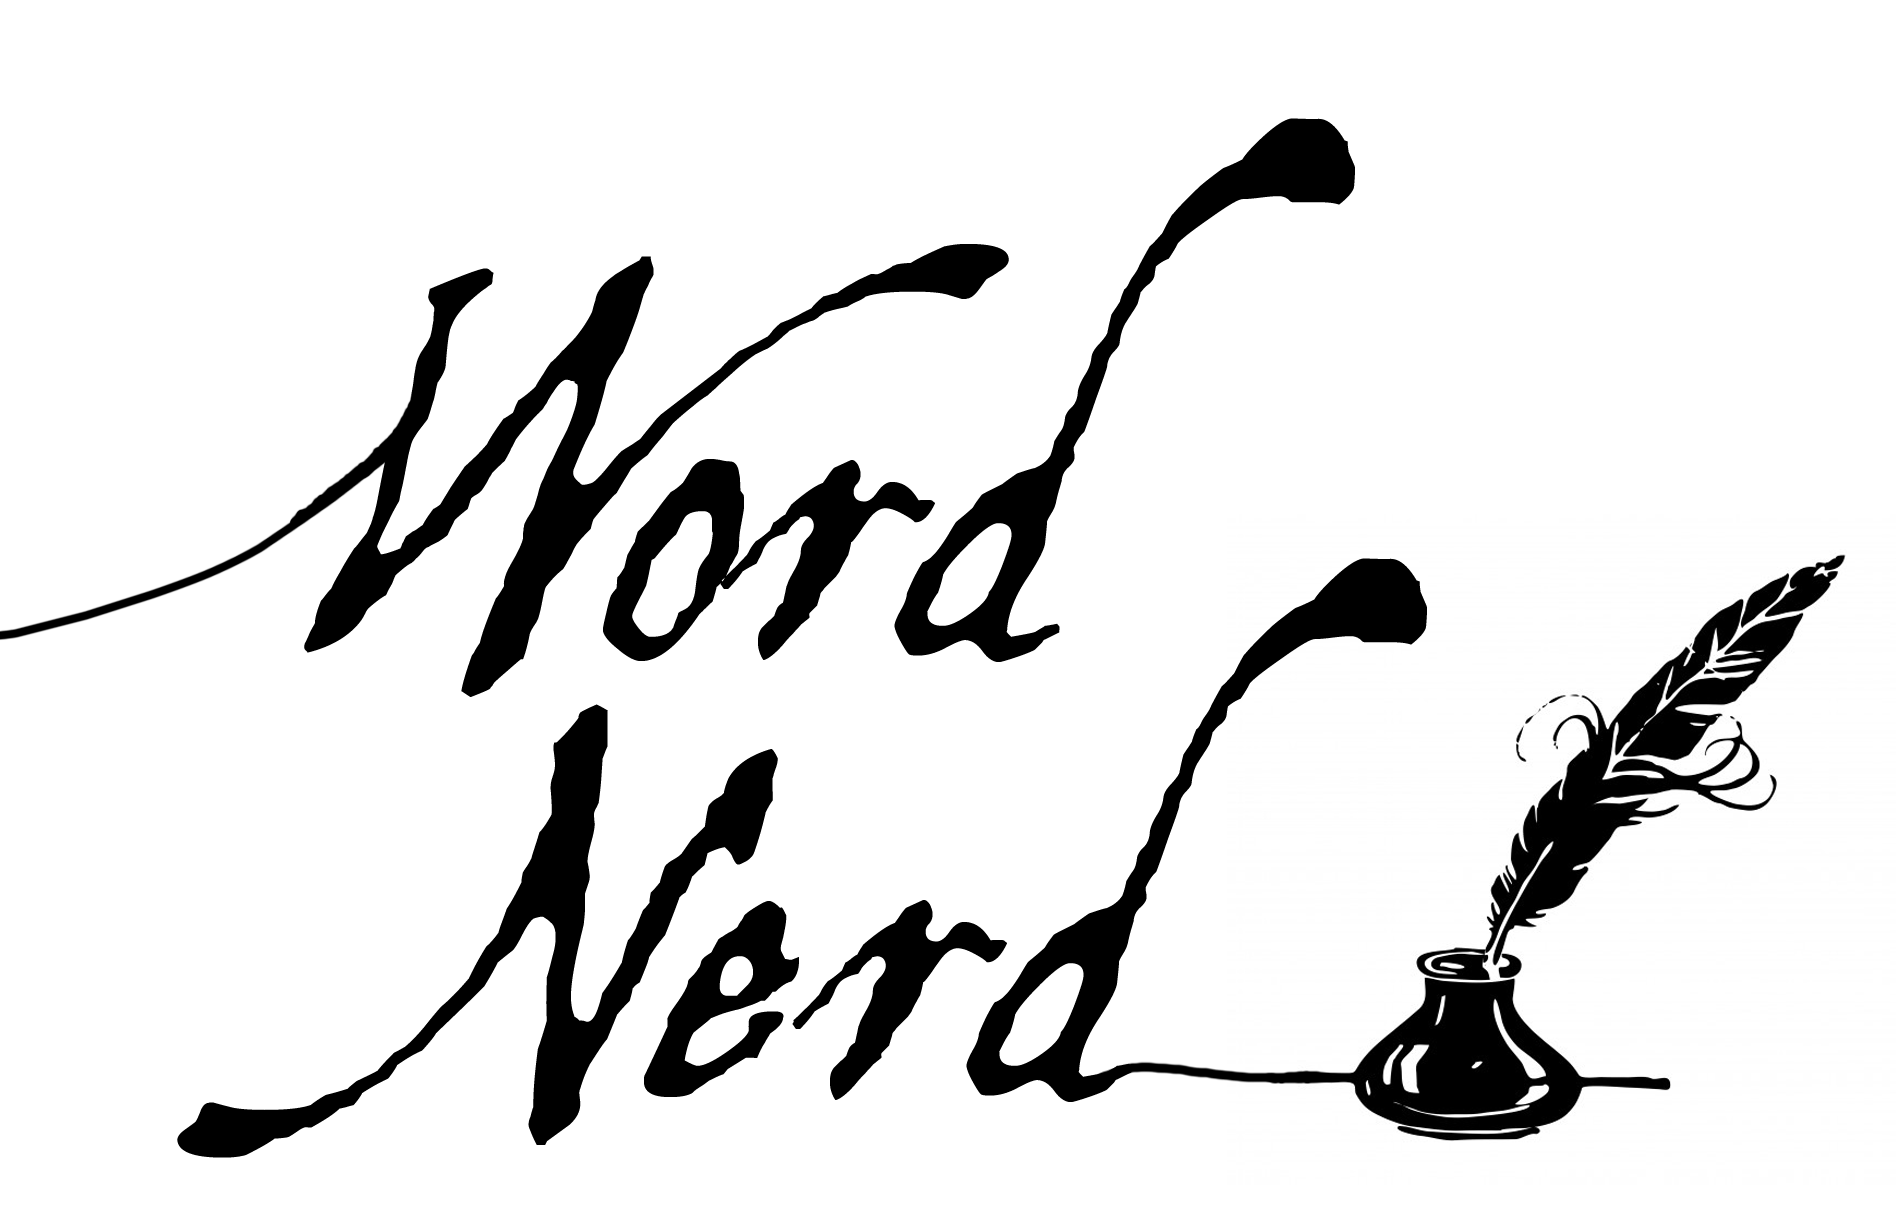 Etymology Blog - THE ETYMOLOGY NERD